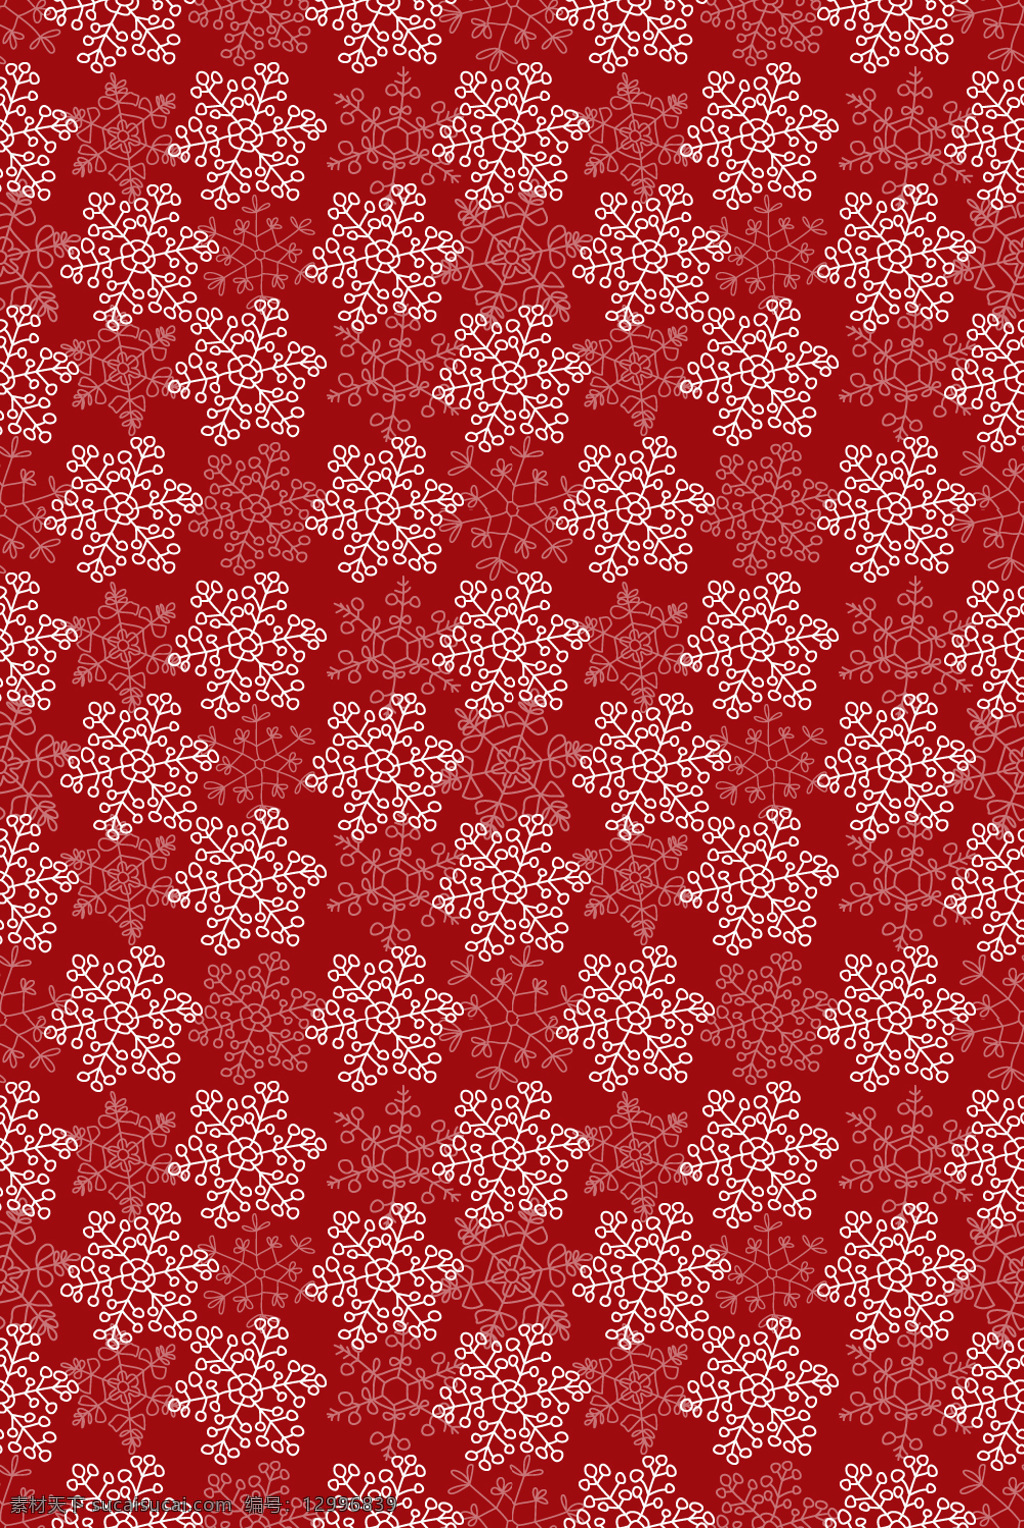 圣诞节 雪花 背景图 红色 卡哇伊 红 白 底纹边框 背景底纹